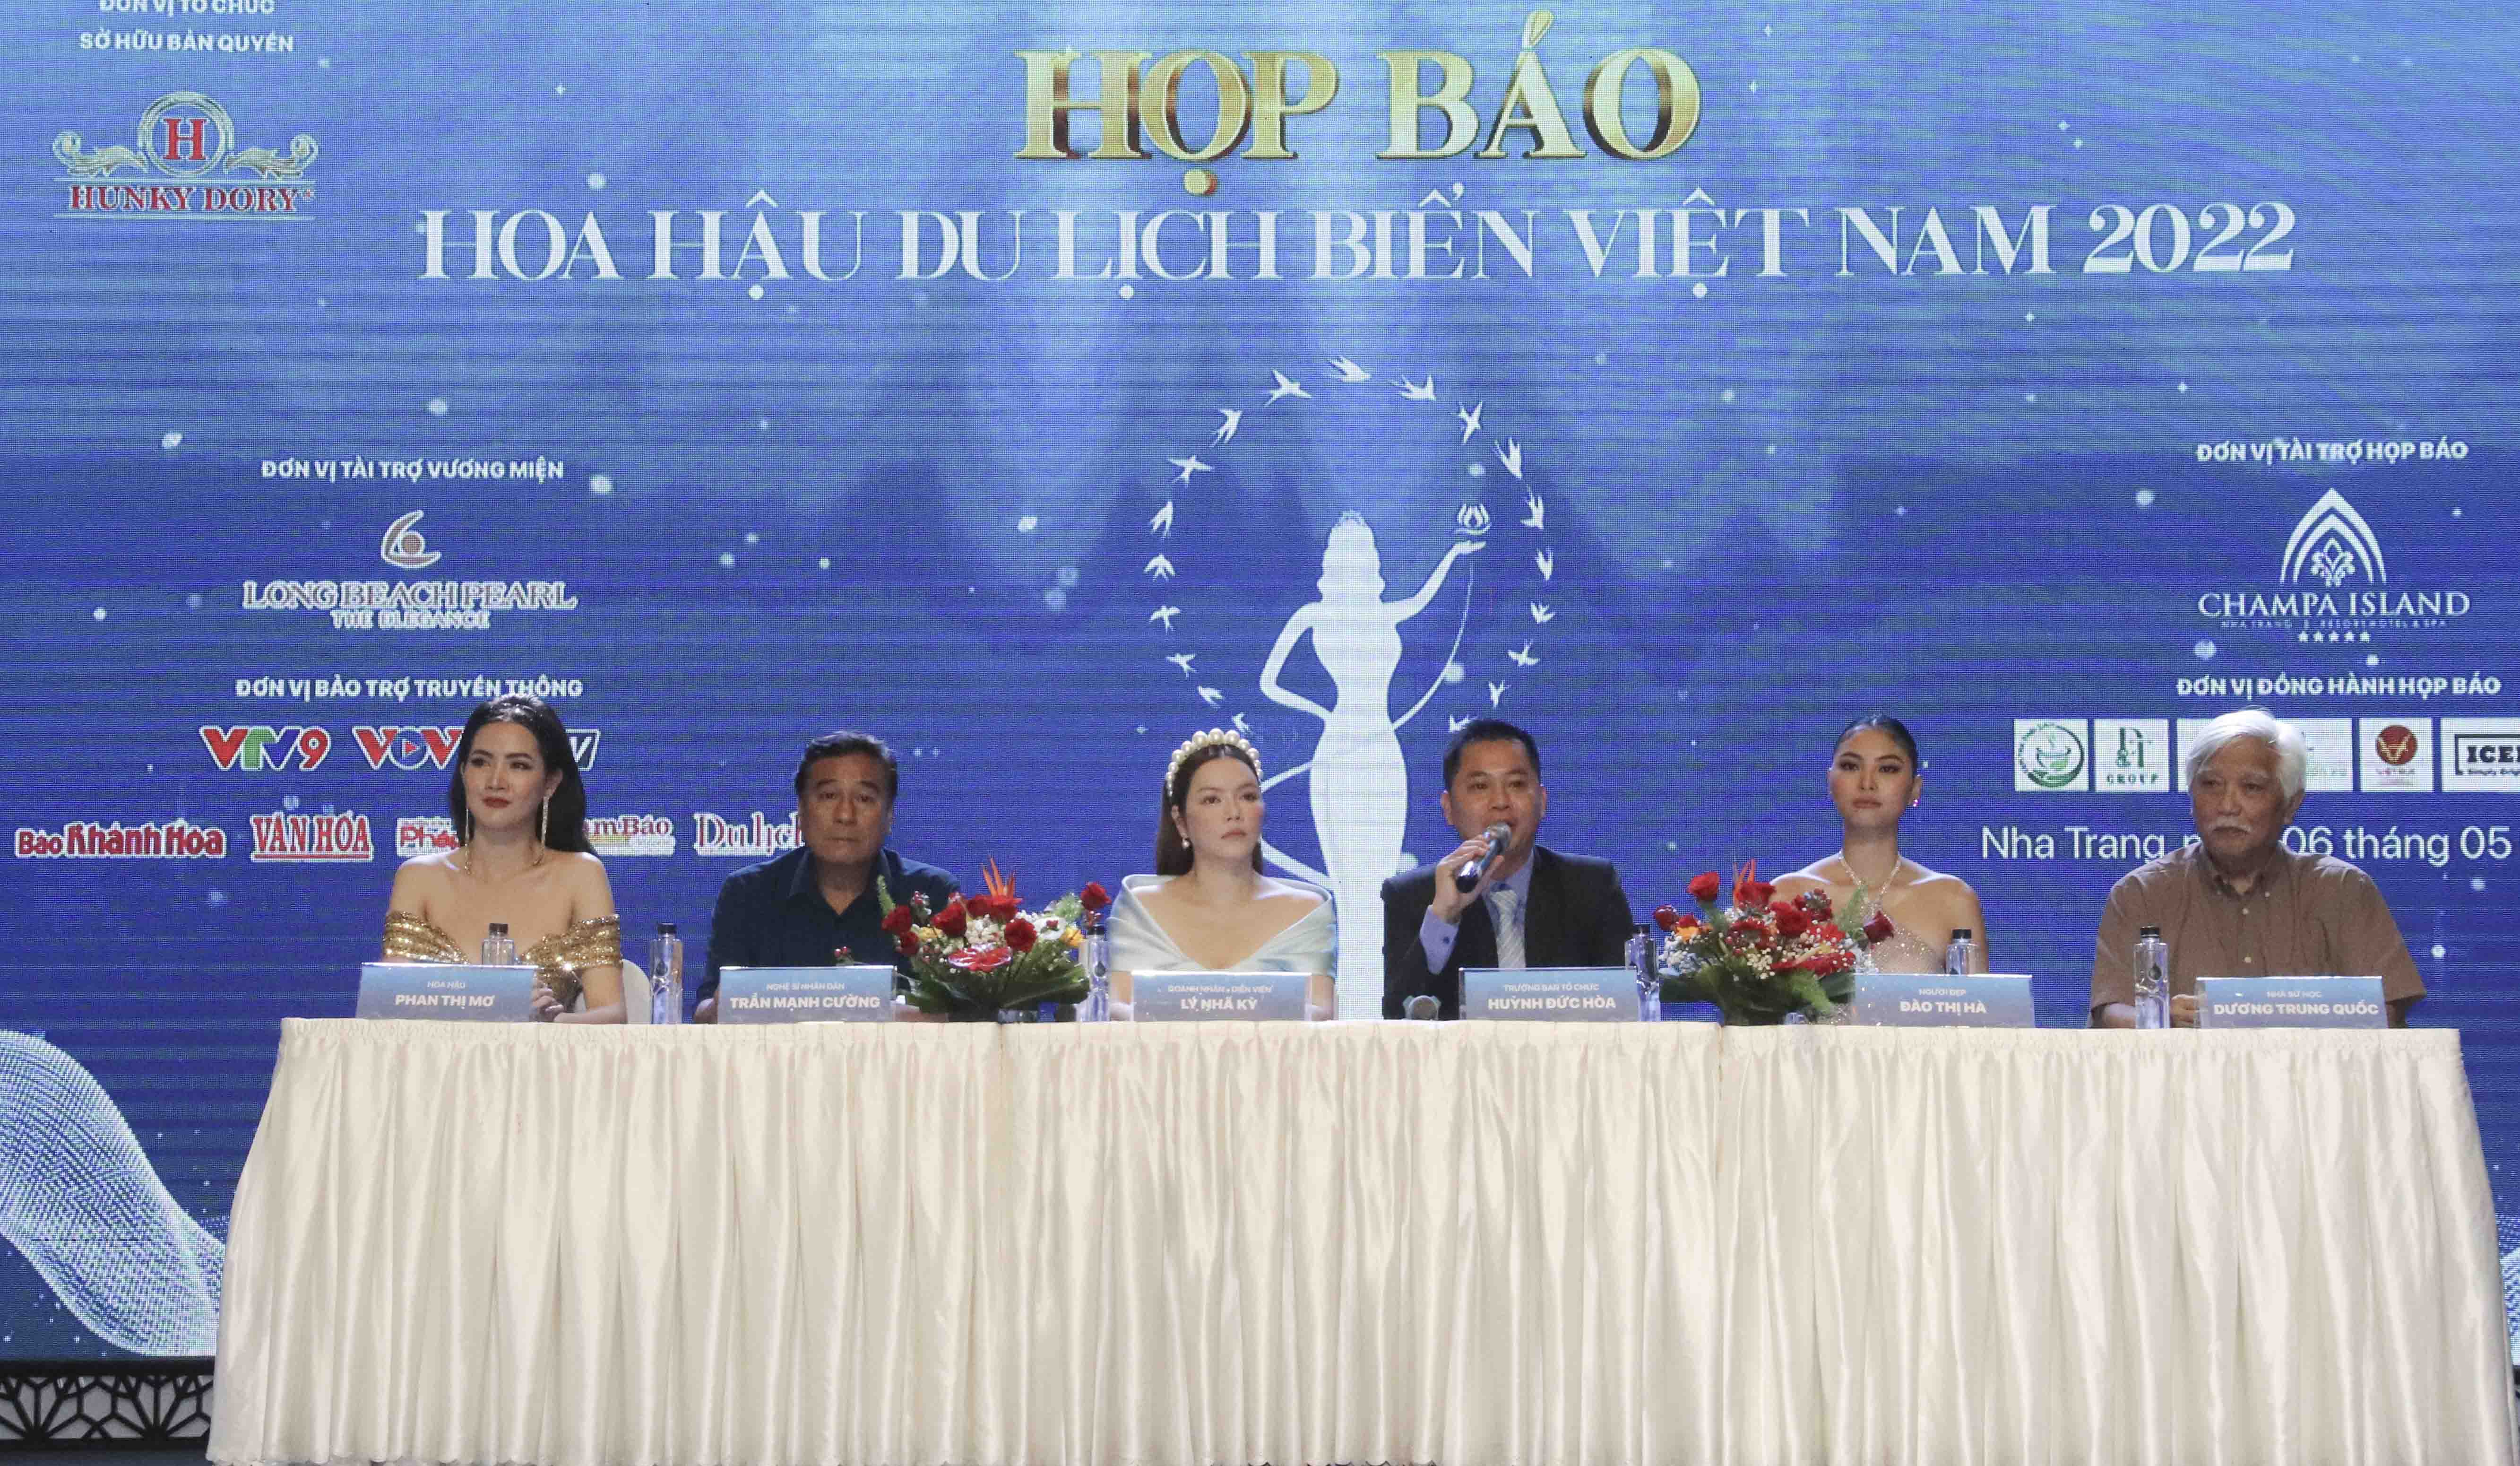 Đại diện Ban Tổ chức Cuộc thi Hoa hậu Du lịch Biển Việt Nam 2022 giải đáp những vấn đề của các nhà báo, phóng viên tại buổi họp báo.